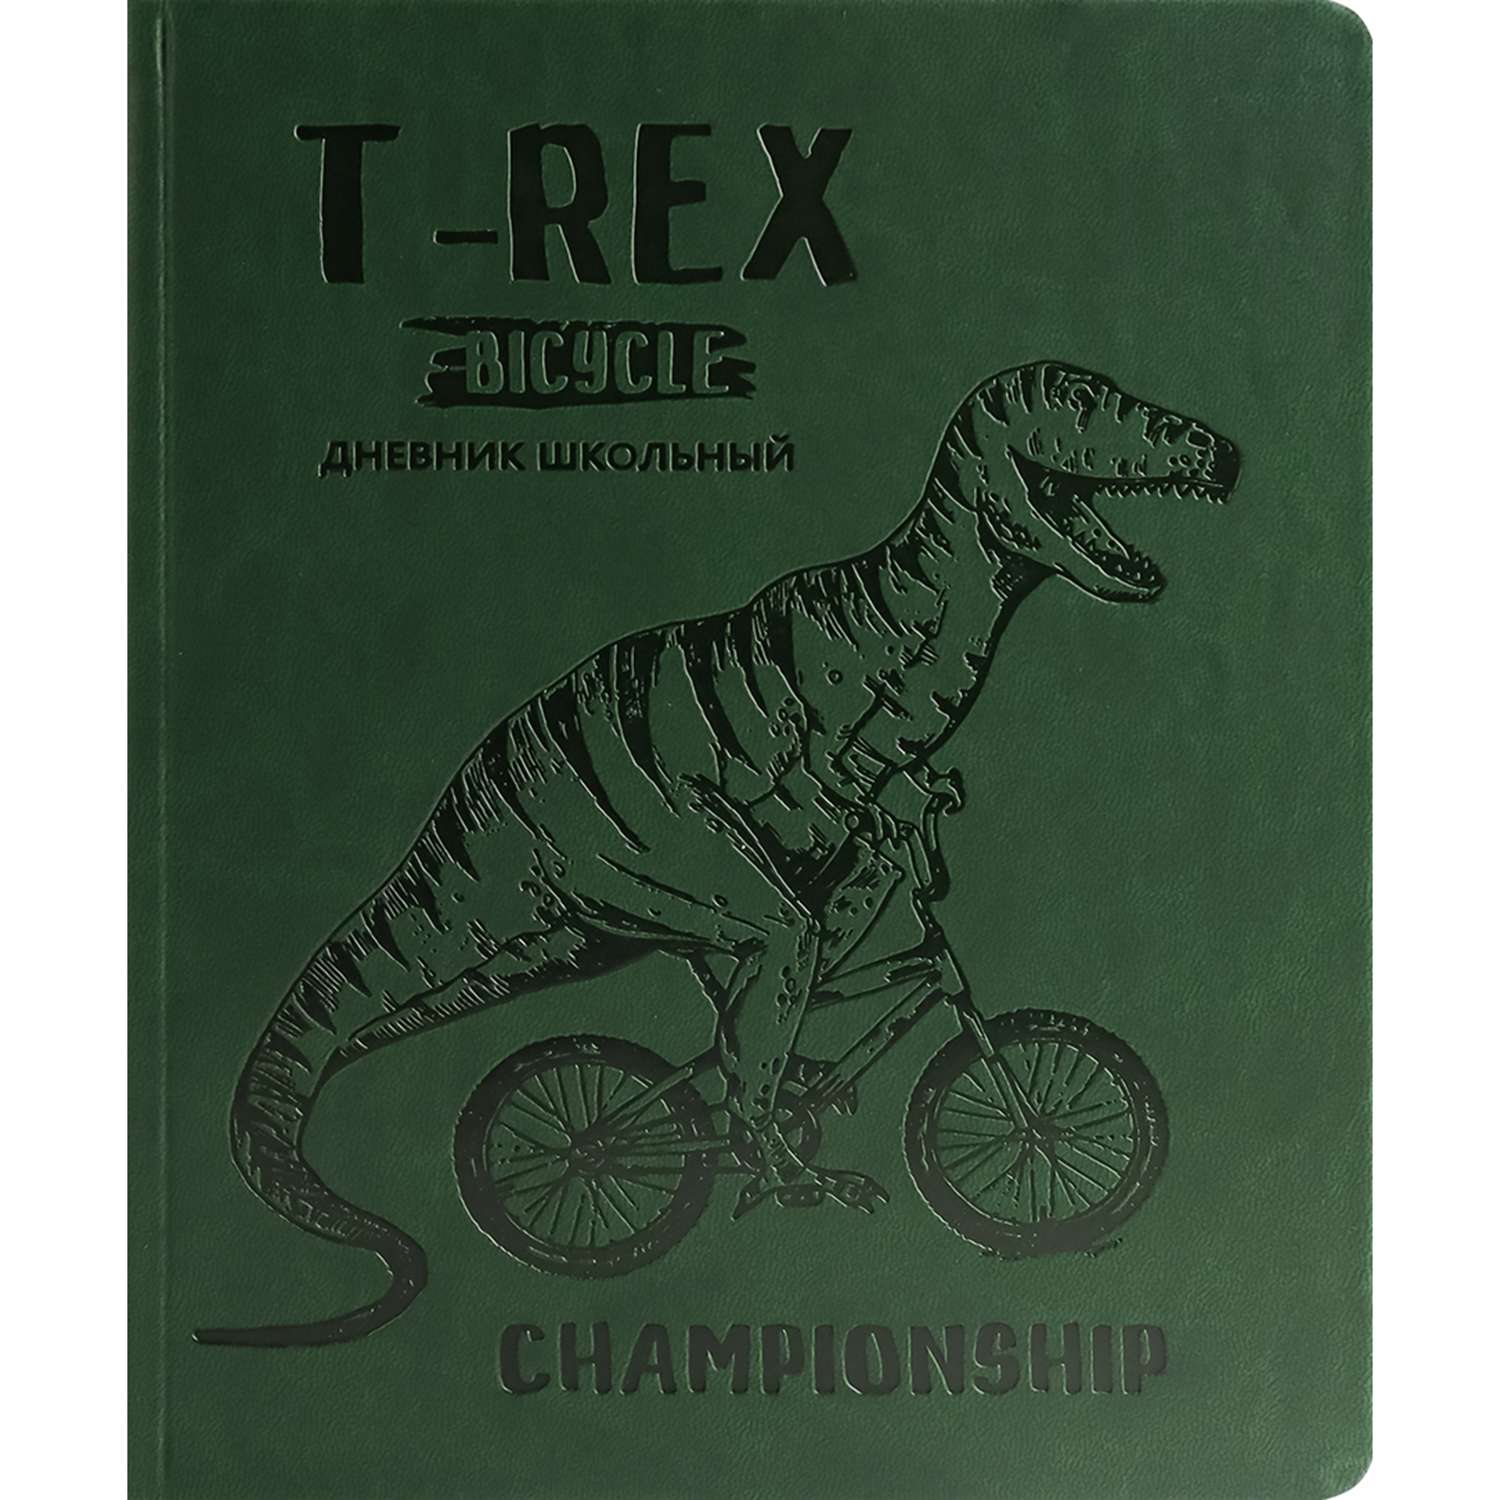 Дневник школьный Prof-Press Ти-Рекс велосипедист 48 листов универсальный зеленый - фото 2